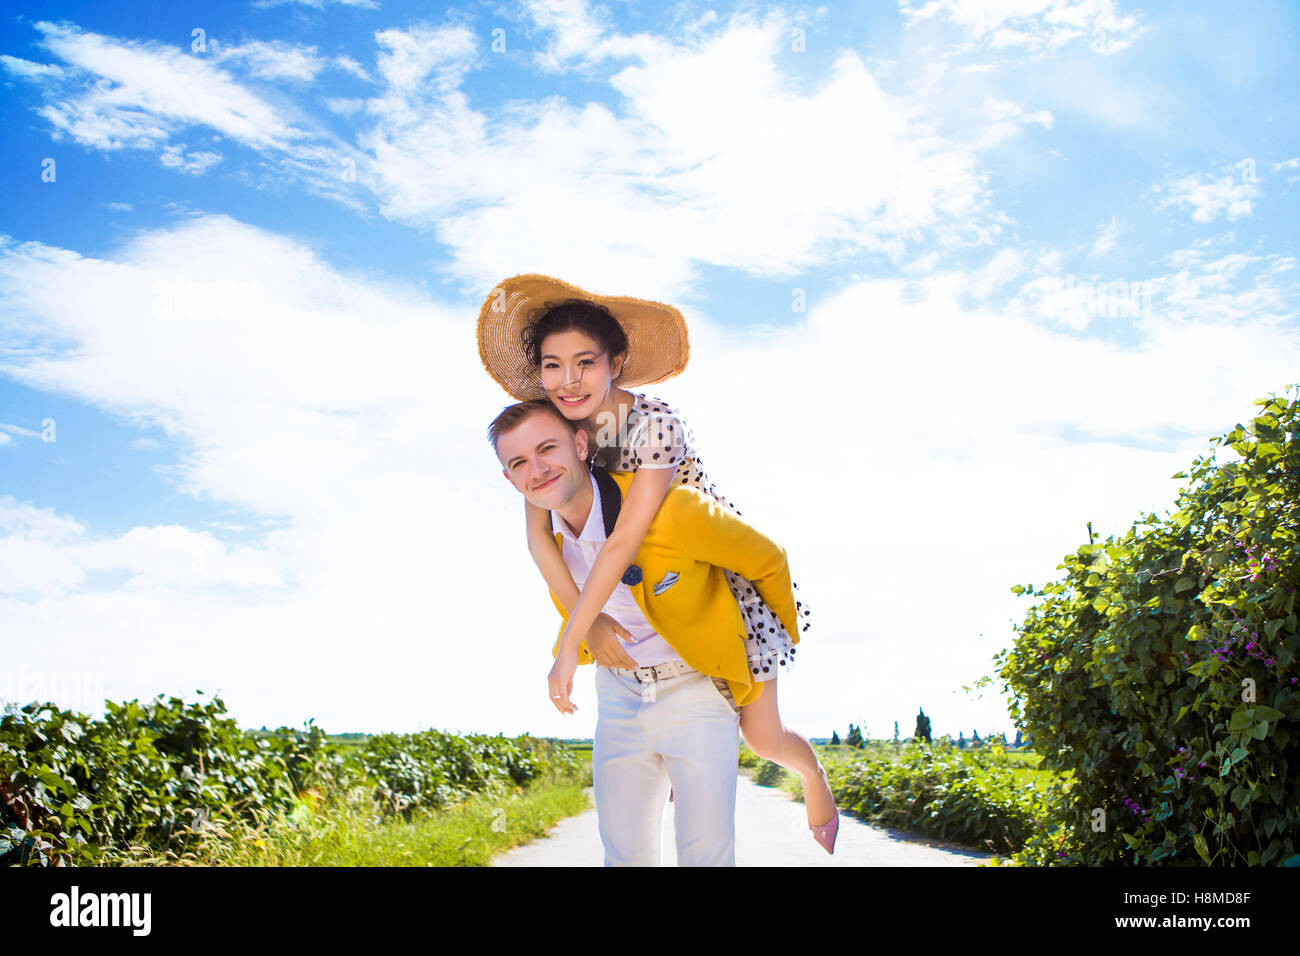 Ritratto di uomo felice piggybacking donna sul sentiero in mezzo al campo contro il cielo nuvoloso Foto Stock